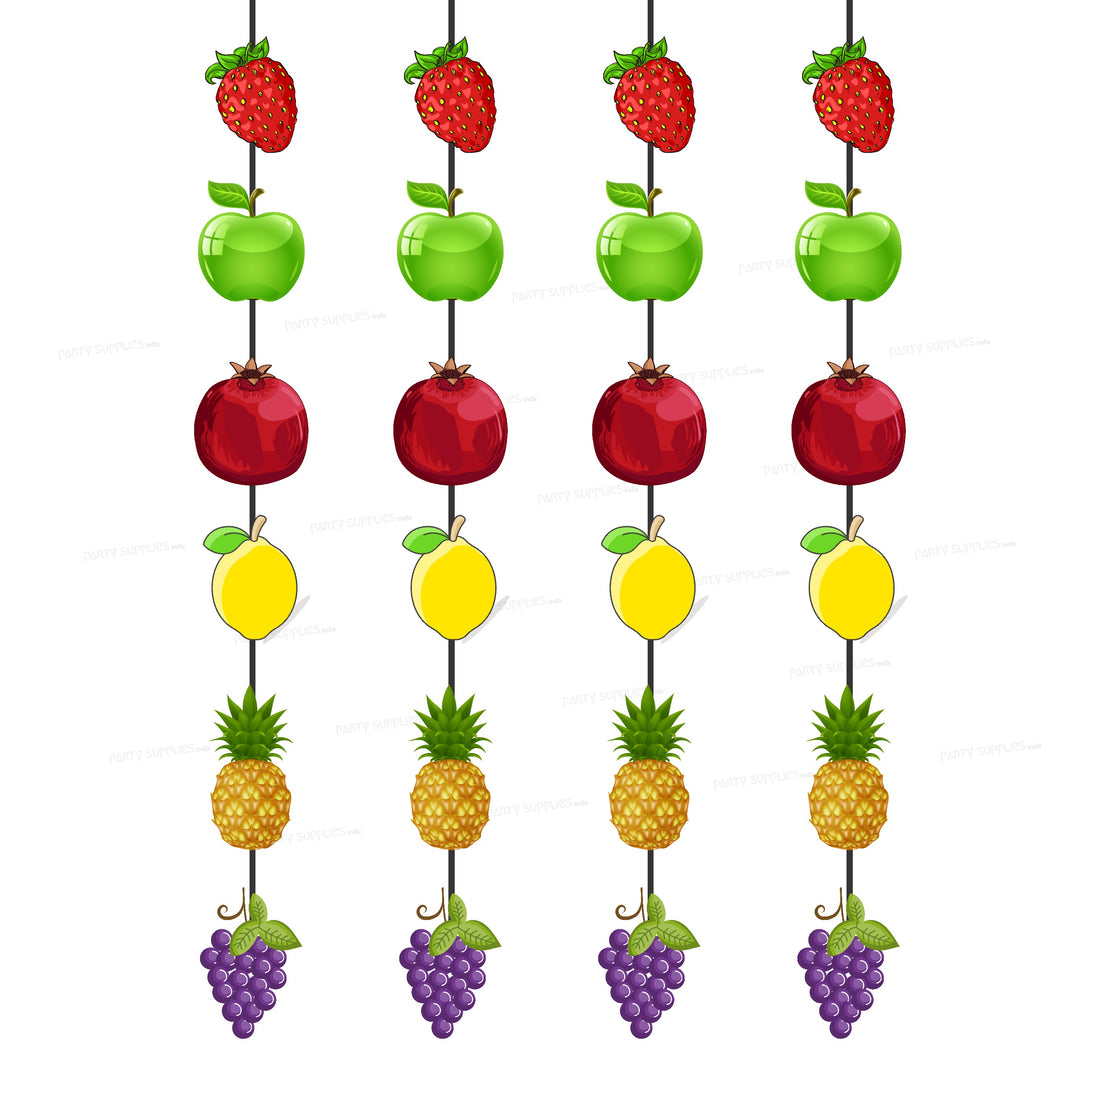 PSI Fruits Theme Dangler